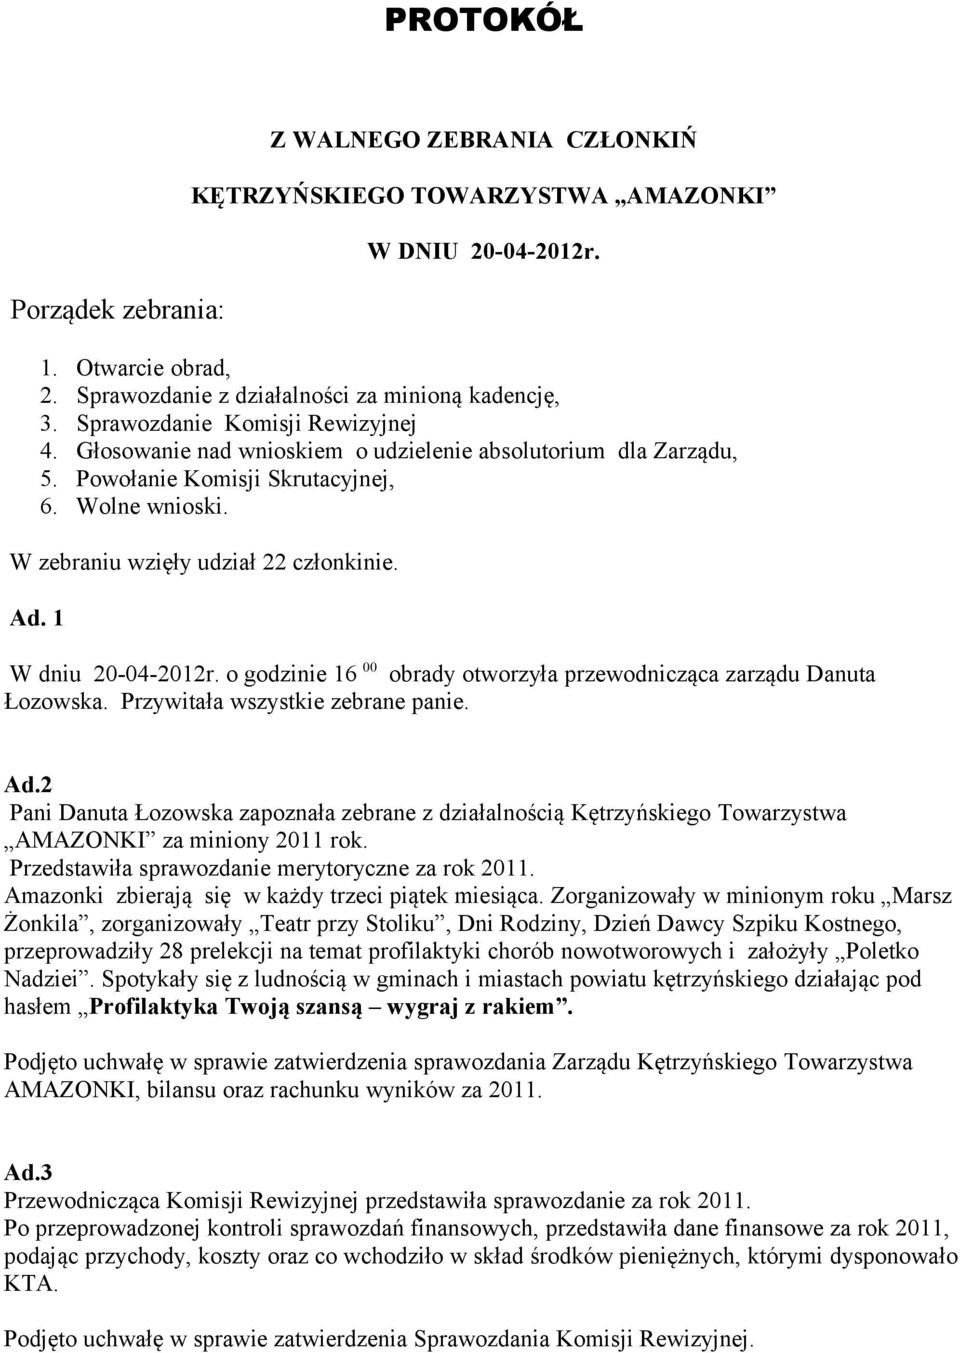 1 W dniu 20-04-2012r. o godzinie 16 00 obrady otworzyła przewodnicząca zarządu Danuta Łozowska. Przywitała wszystkie zebrane panie. Ad.